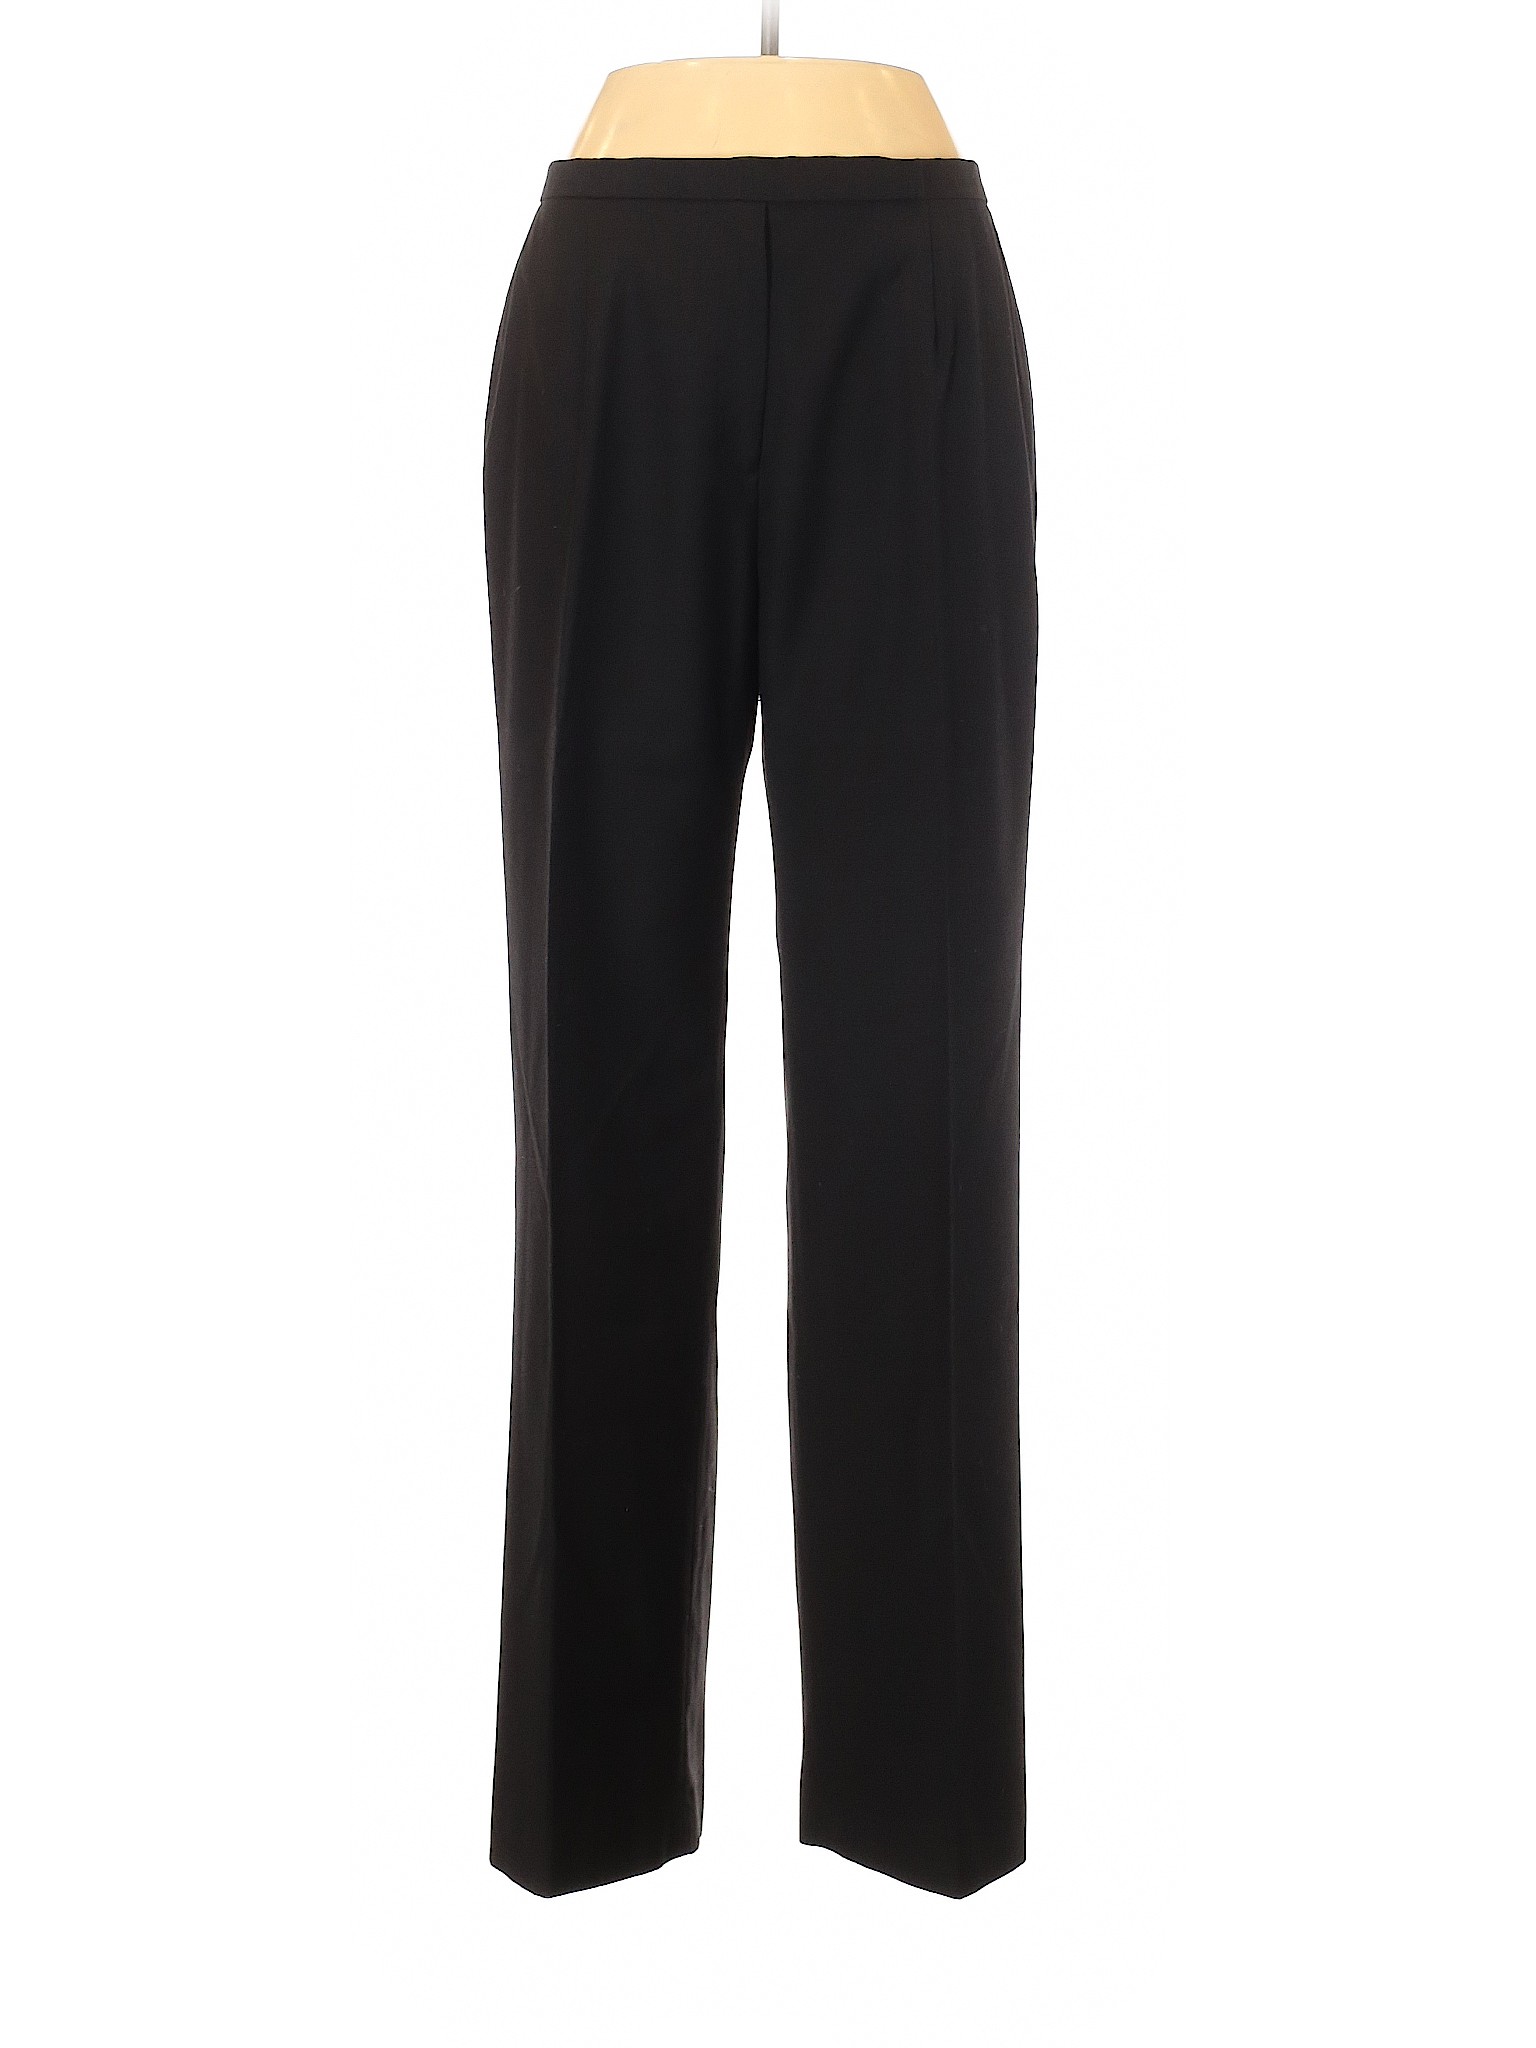 Kasper Women Black Dress Pants 10 | eBay